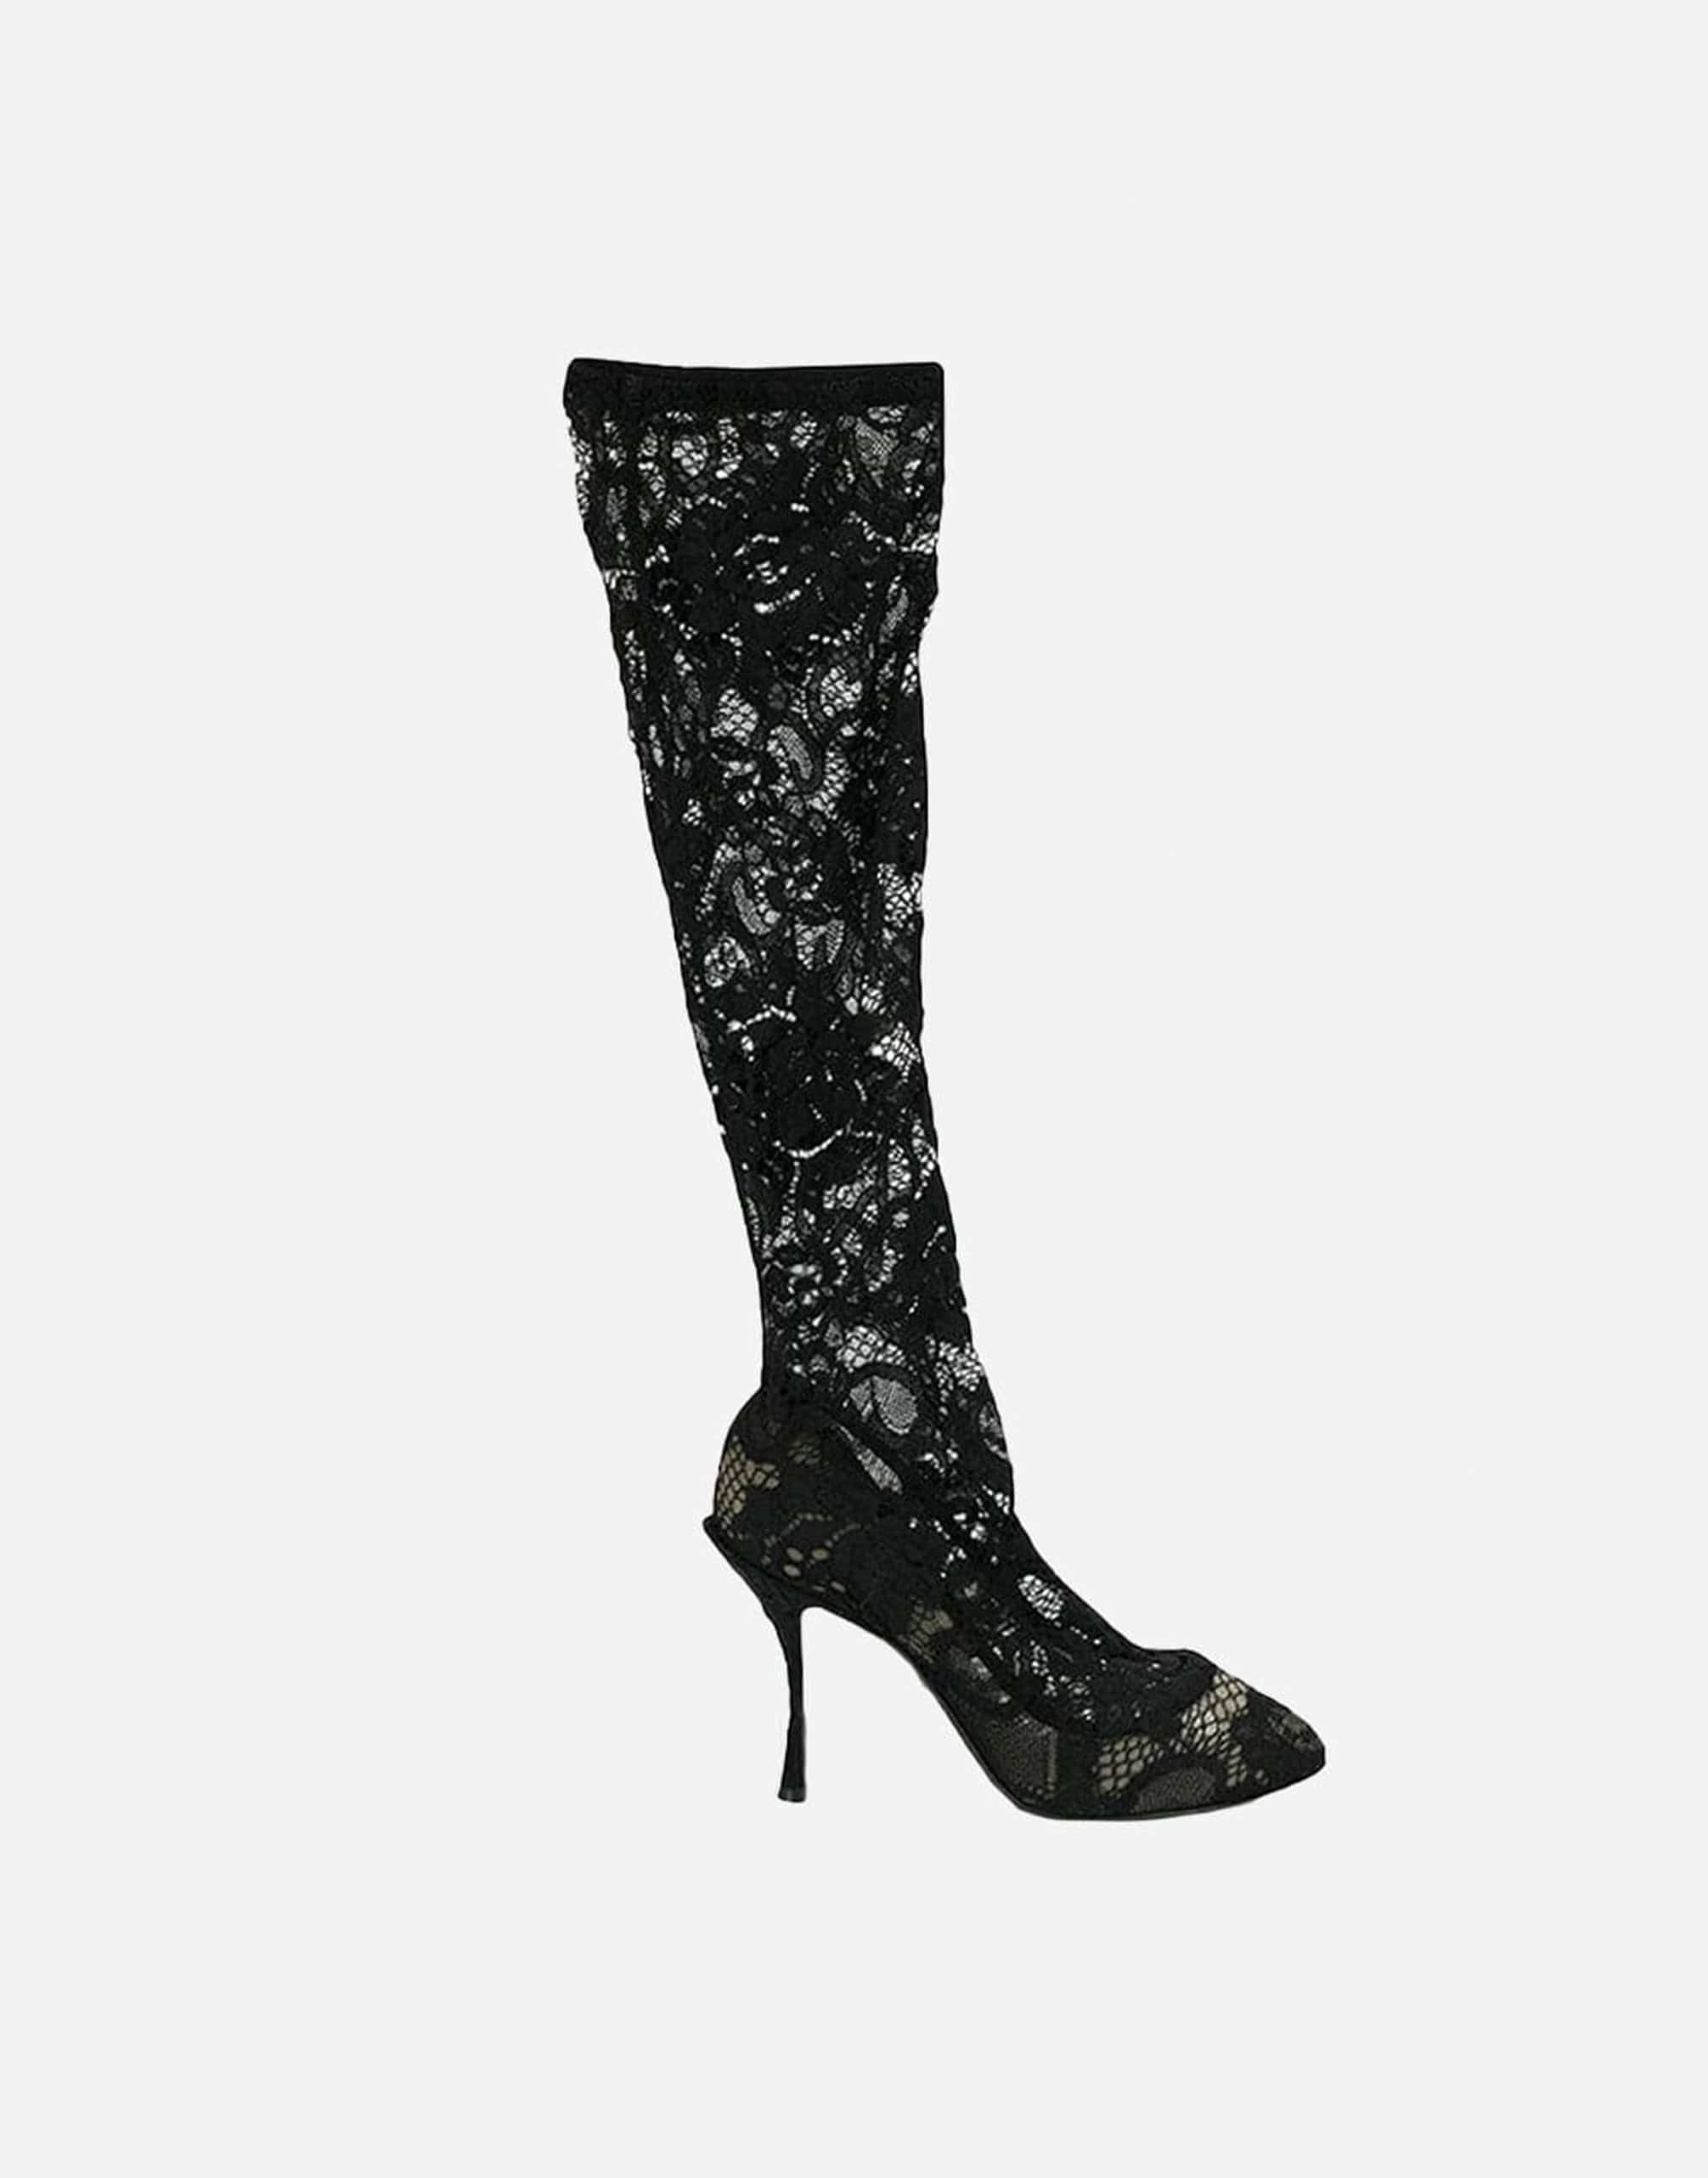 Dolce & Gabbana Sheer Lace Boots